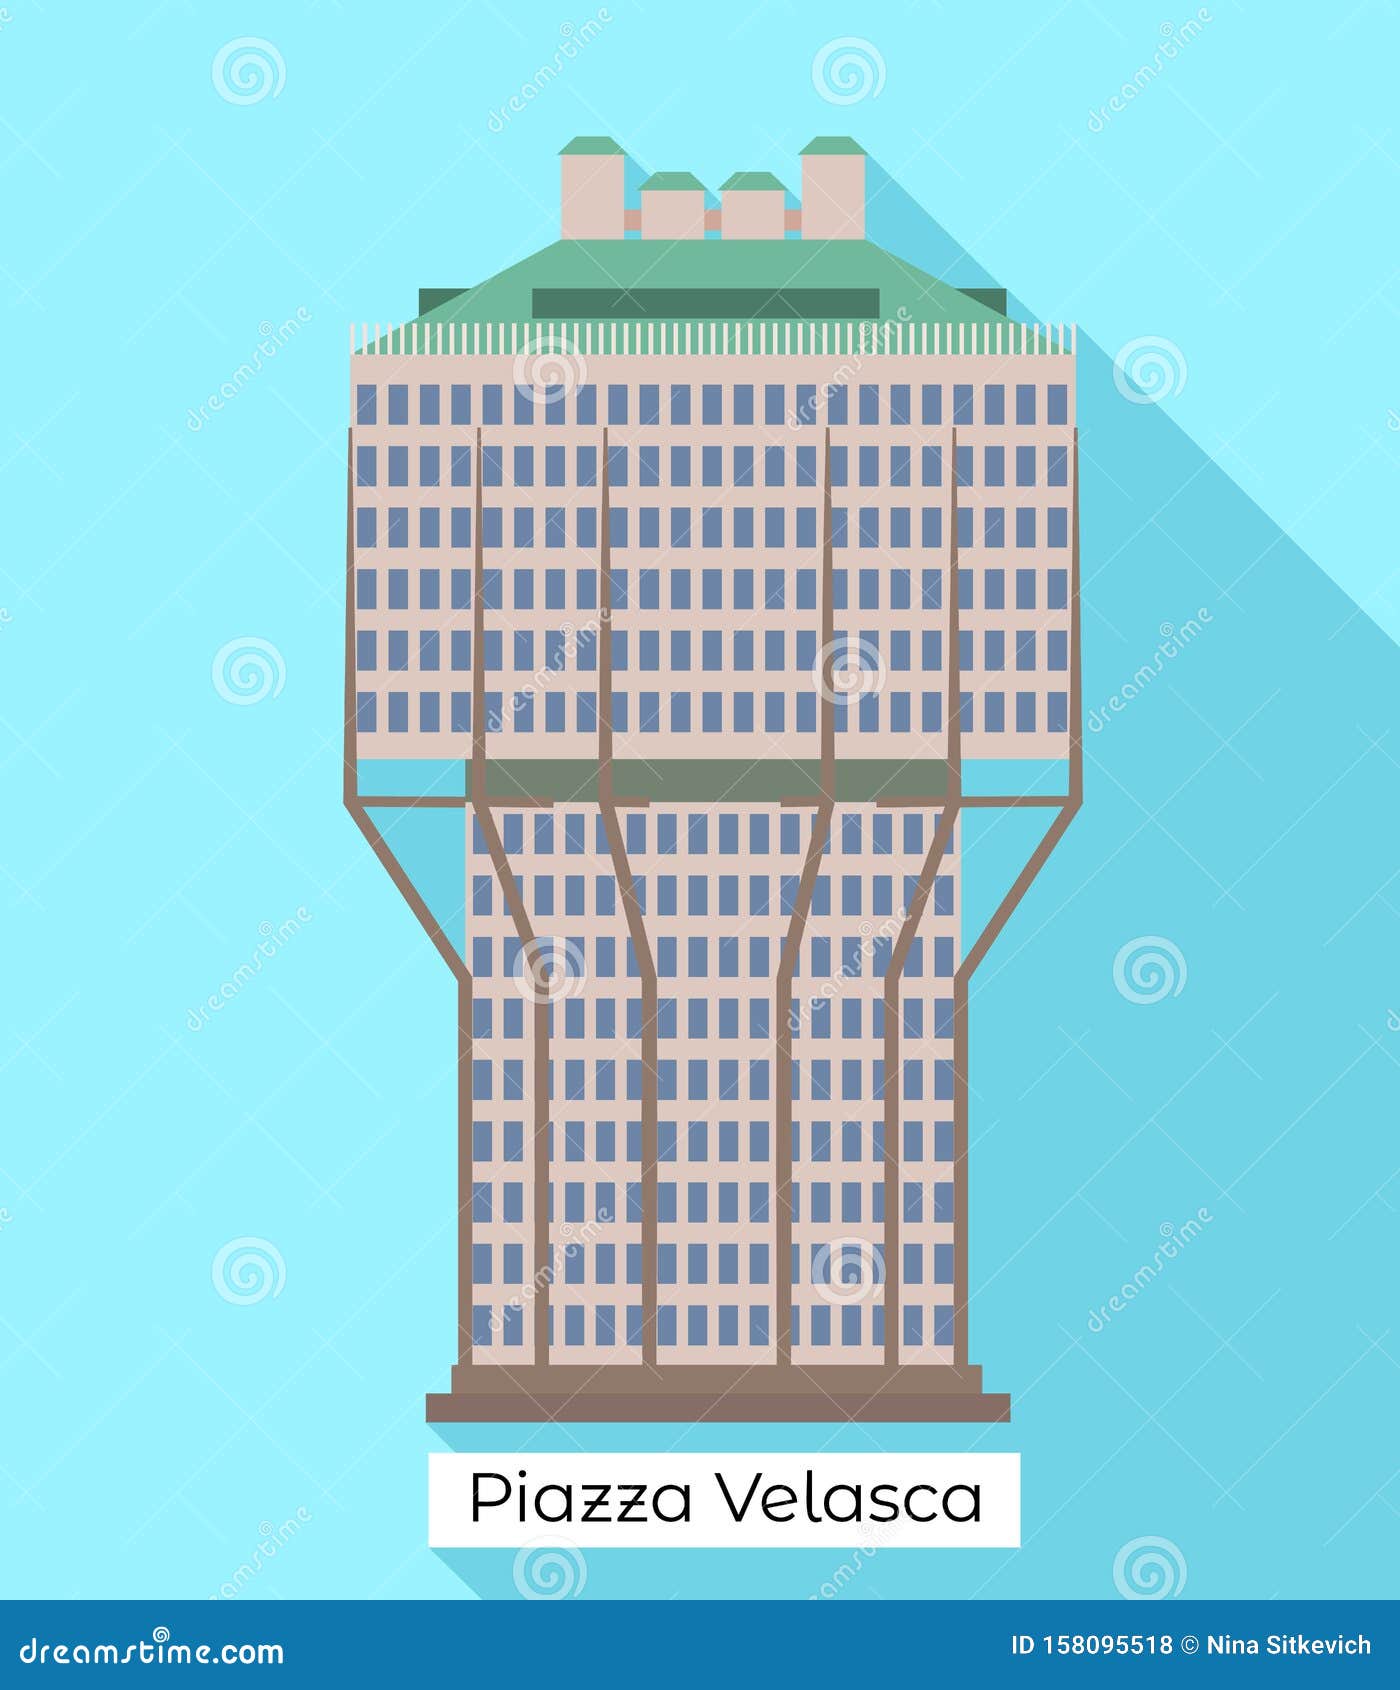 milan piazza velasca icon, flat style